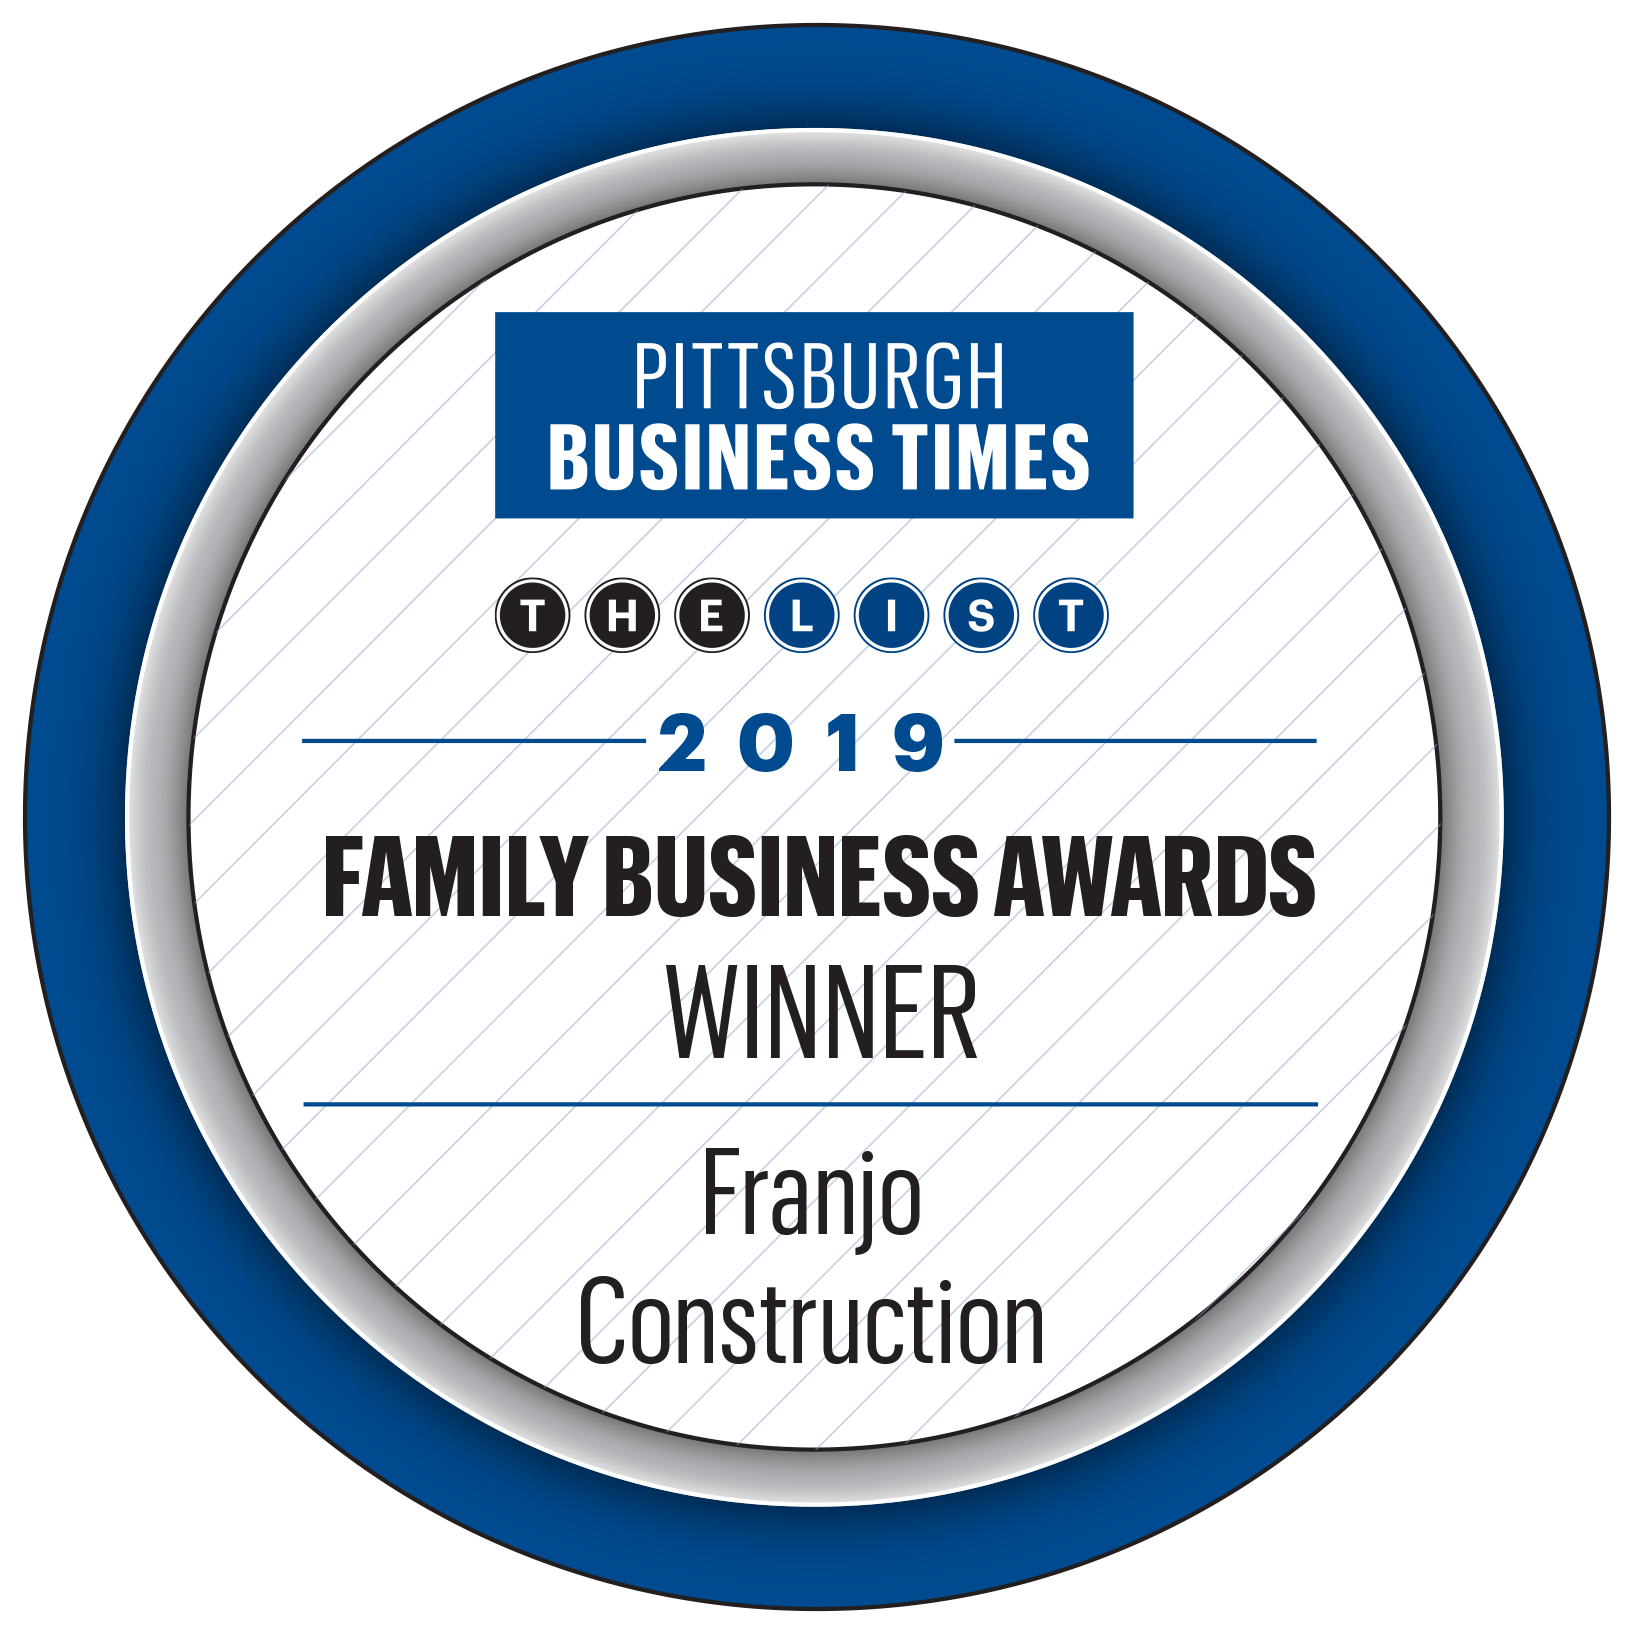 Family Business Award Winner